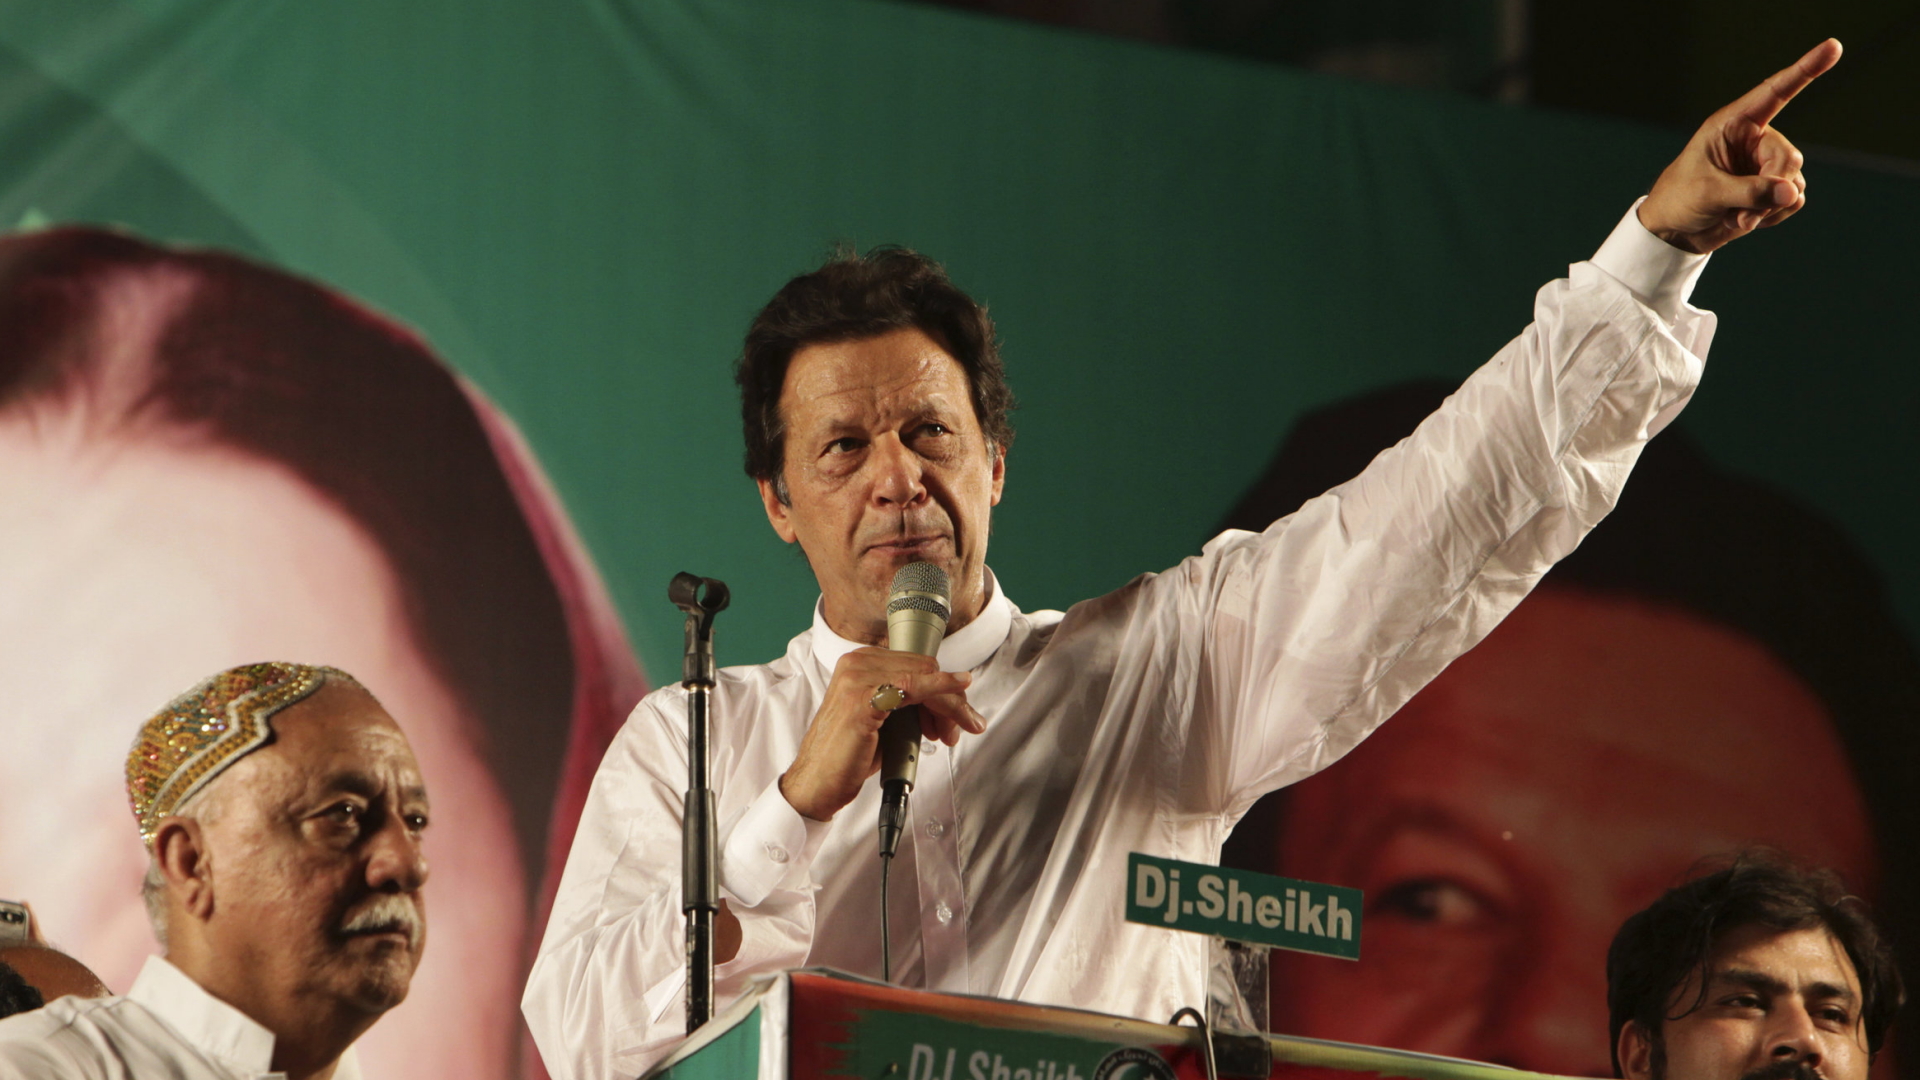 Imran Khan, Chef der Partei PTI und ehemaliger Cricket-Star, spricht während einer Wahlkampfveranstaltung. | dpa